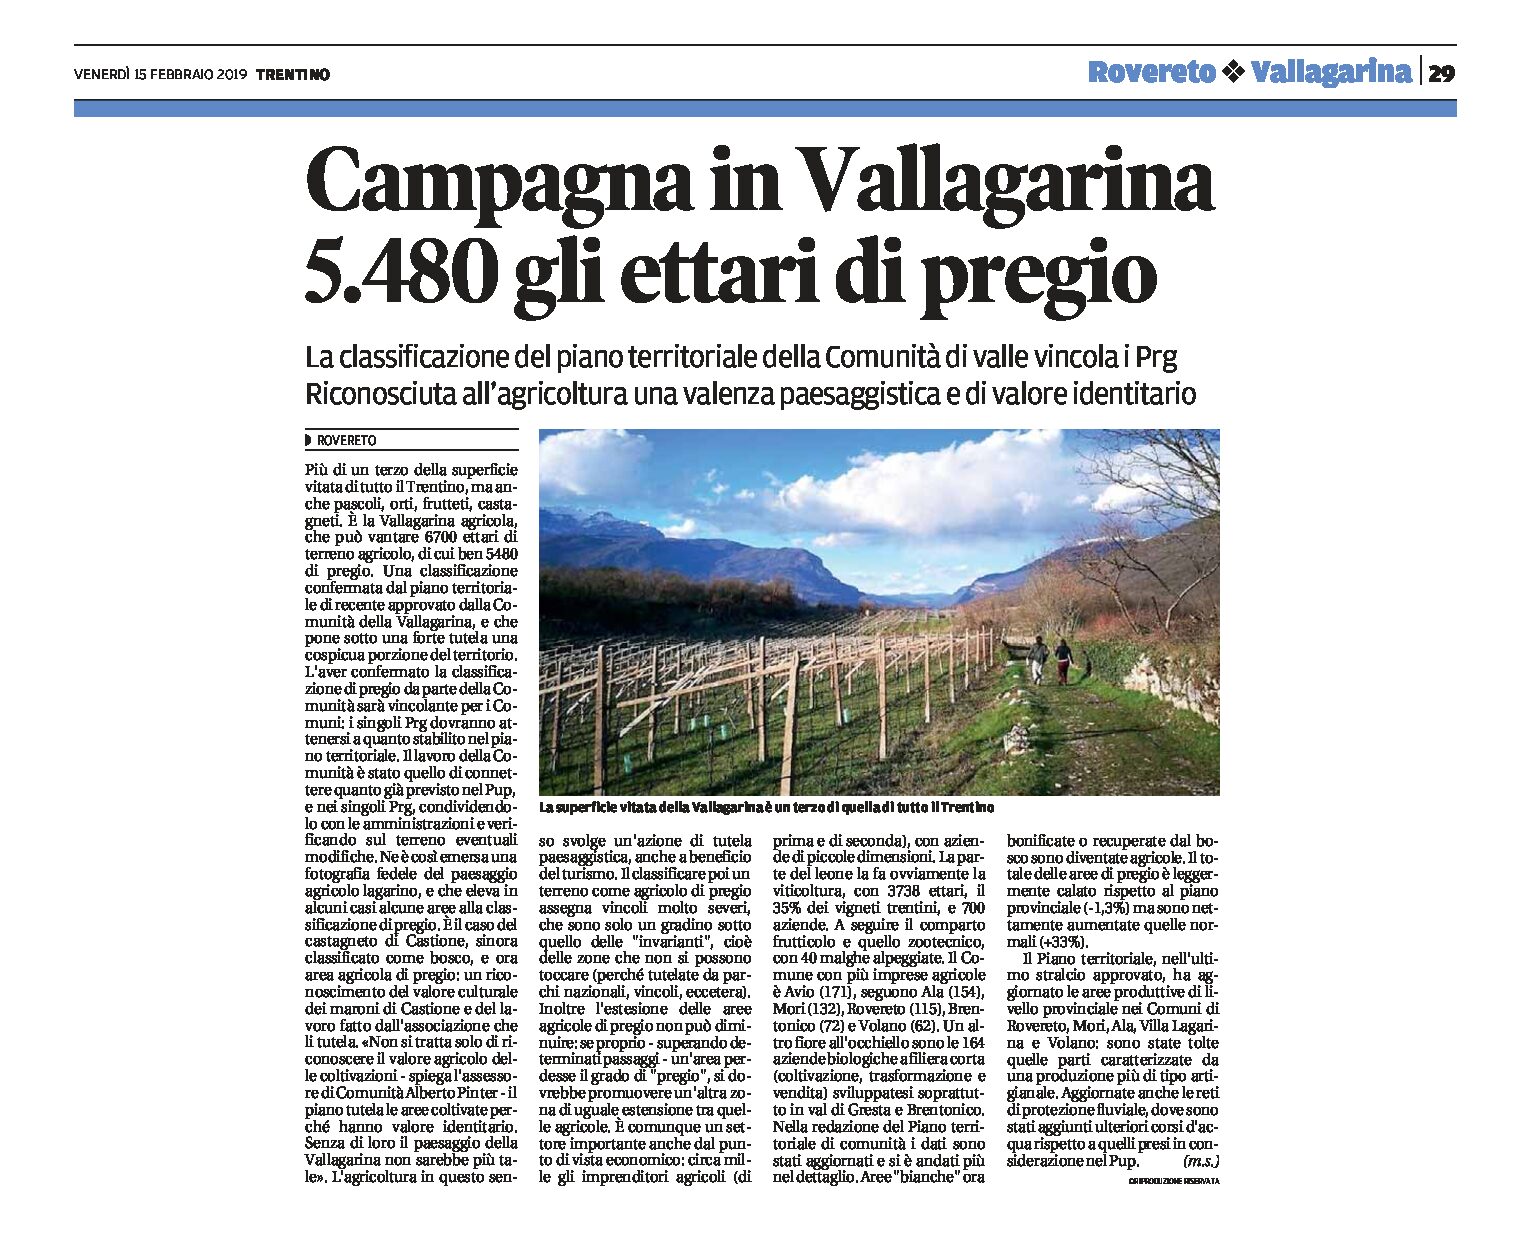 Vallagarina, campagna: 5.480 ettari di pregio. I singoli Prg dovranno tenerne conto